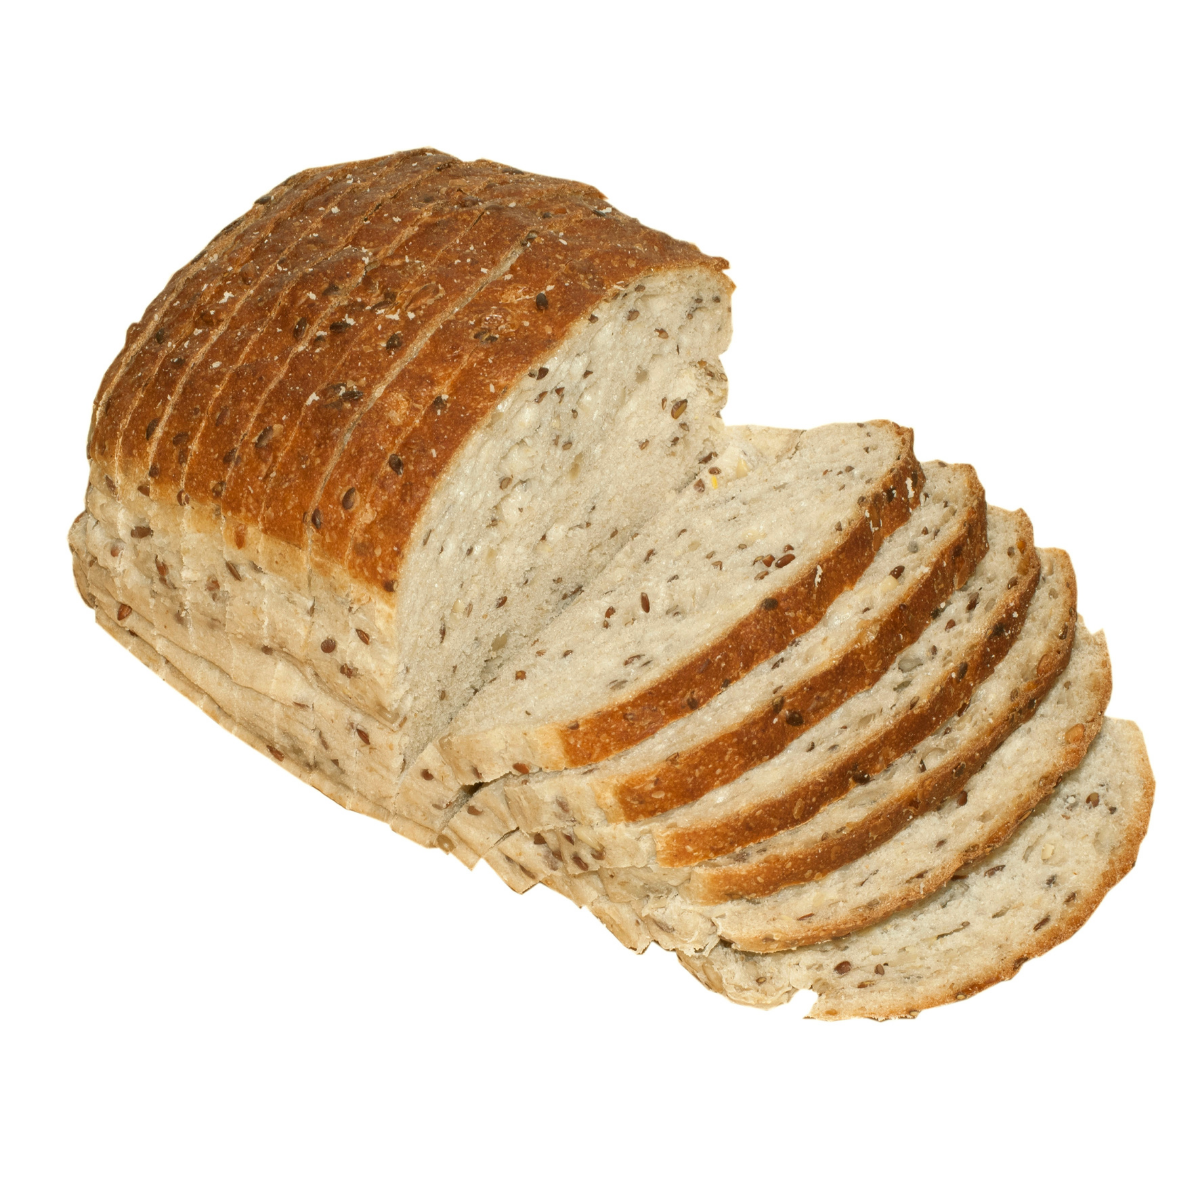 Breakfast bread